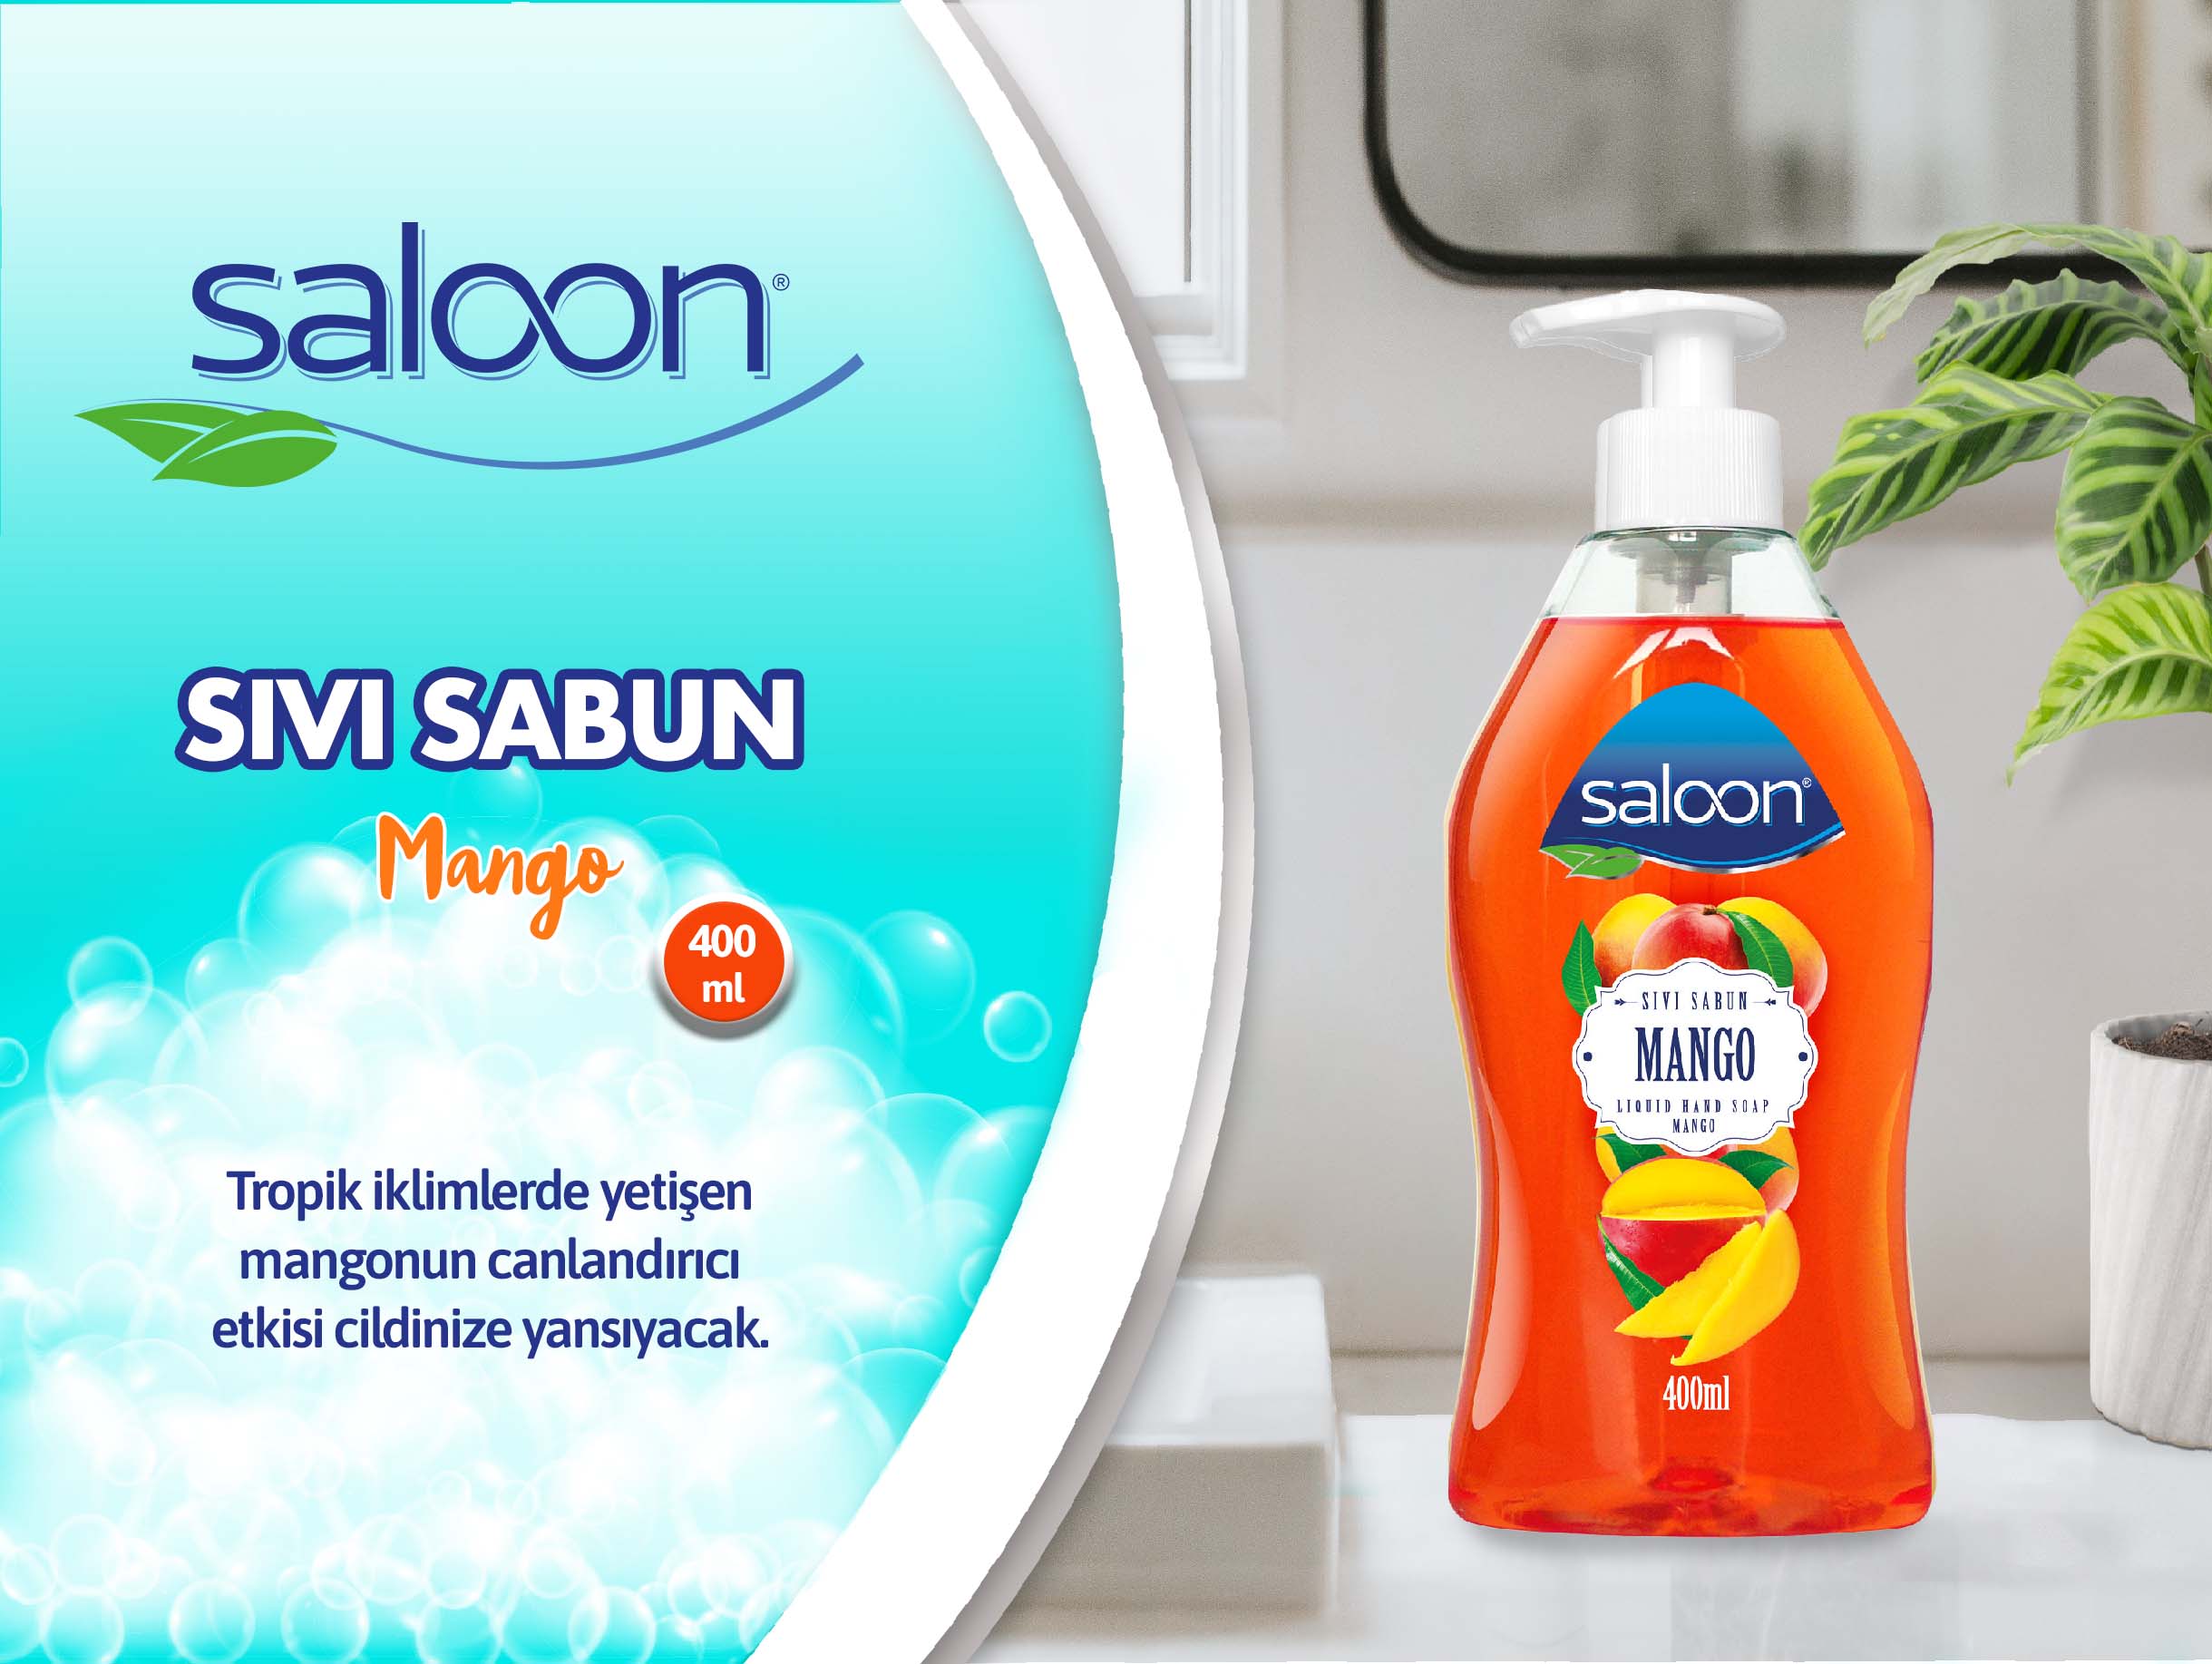 Saloon sıvı Sabun Mango 400 ml.jpg (237 KB)